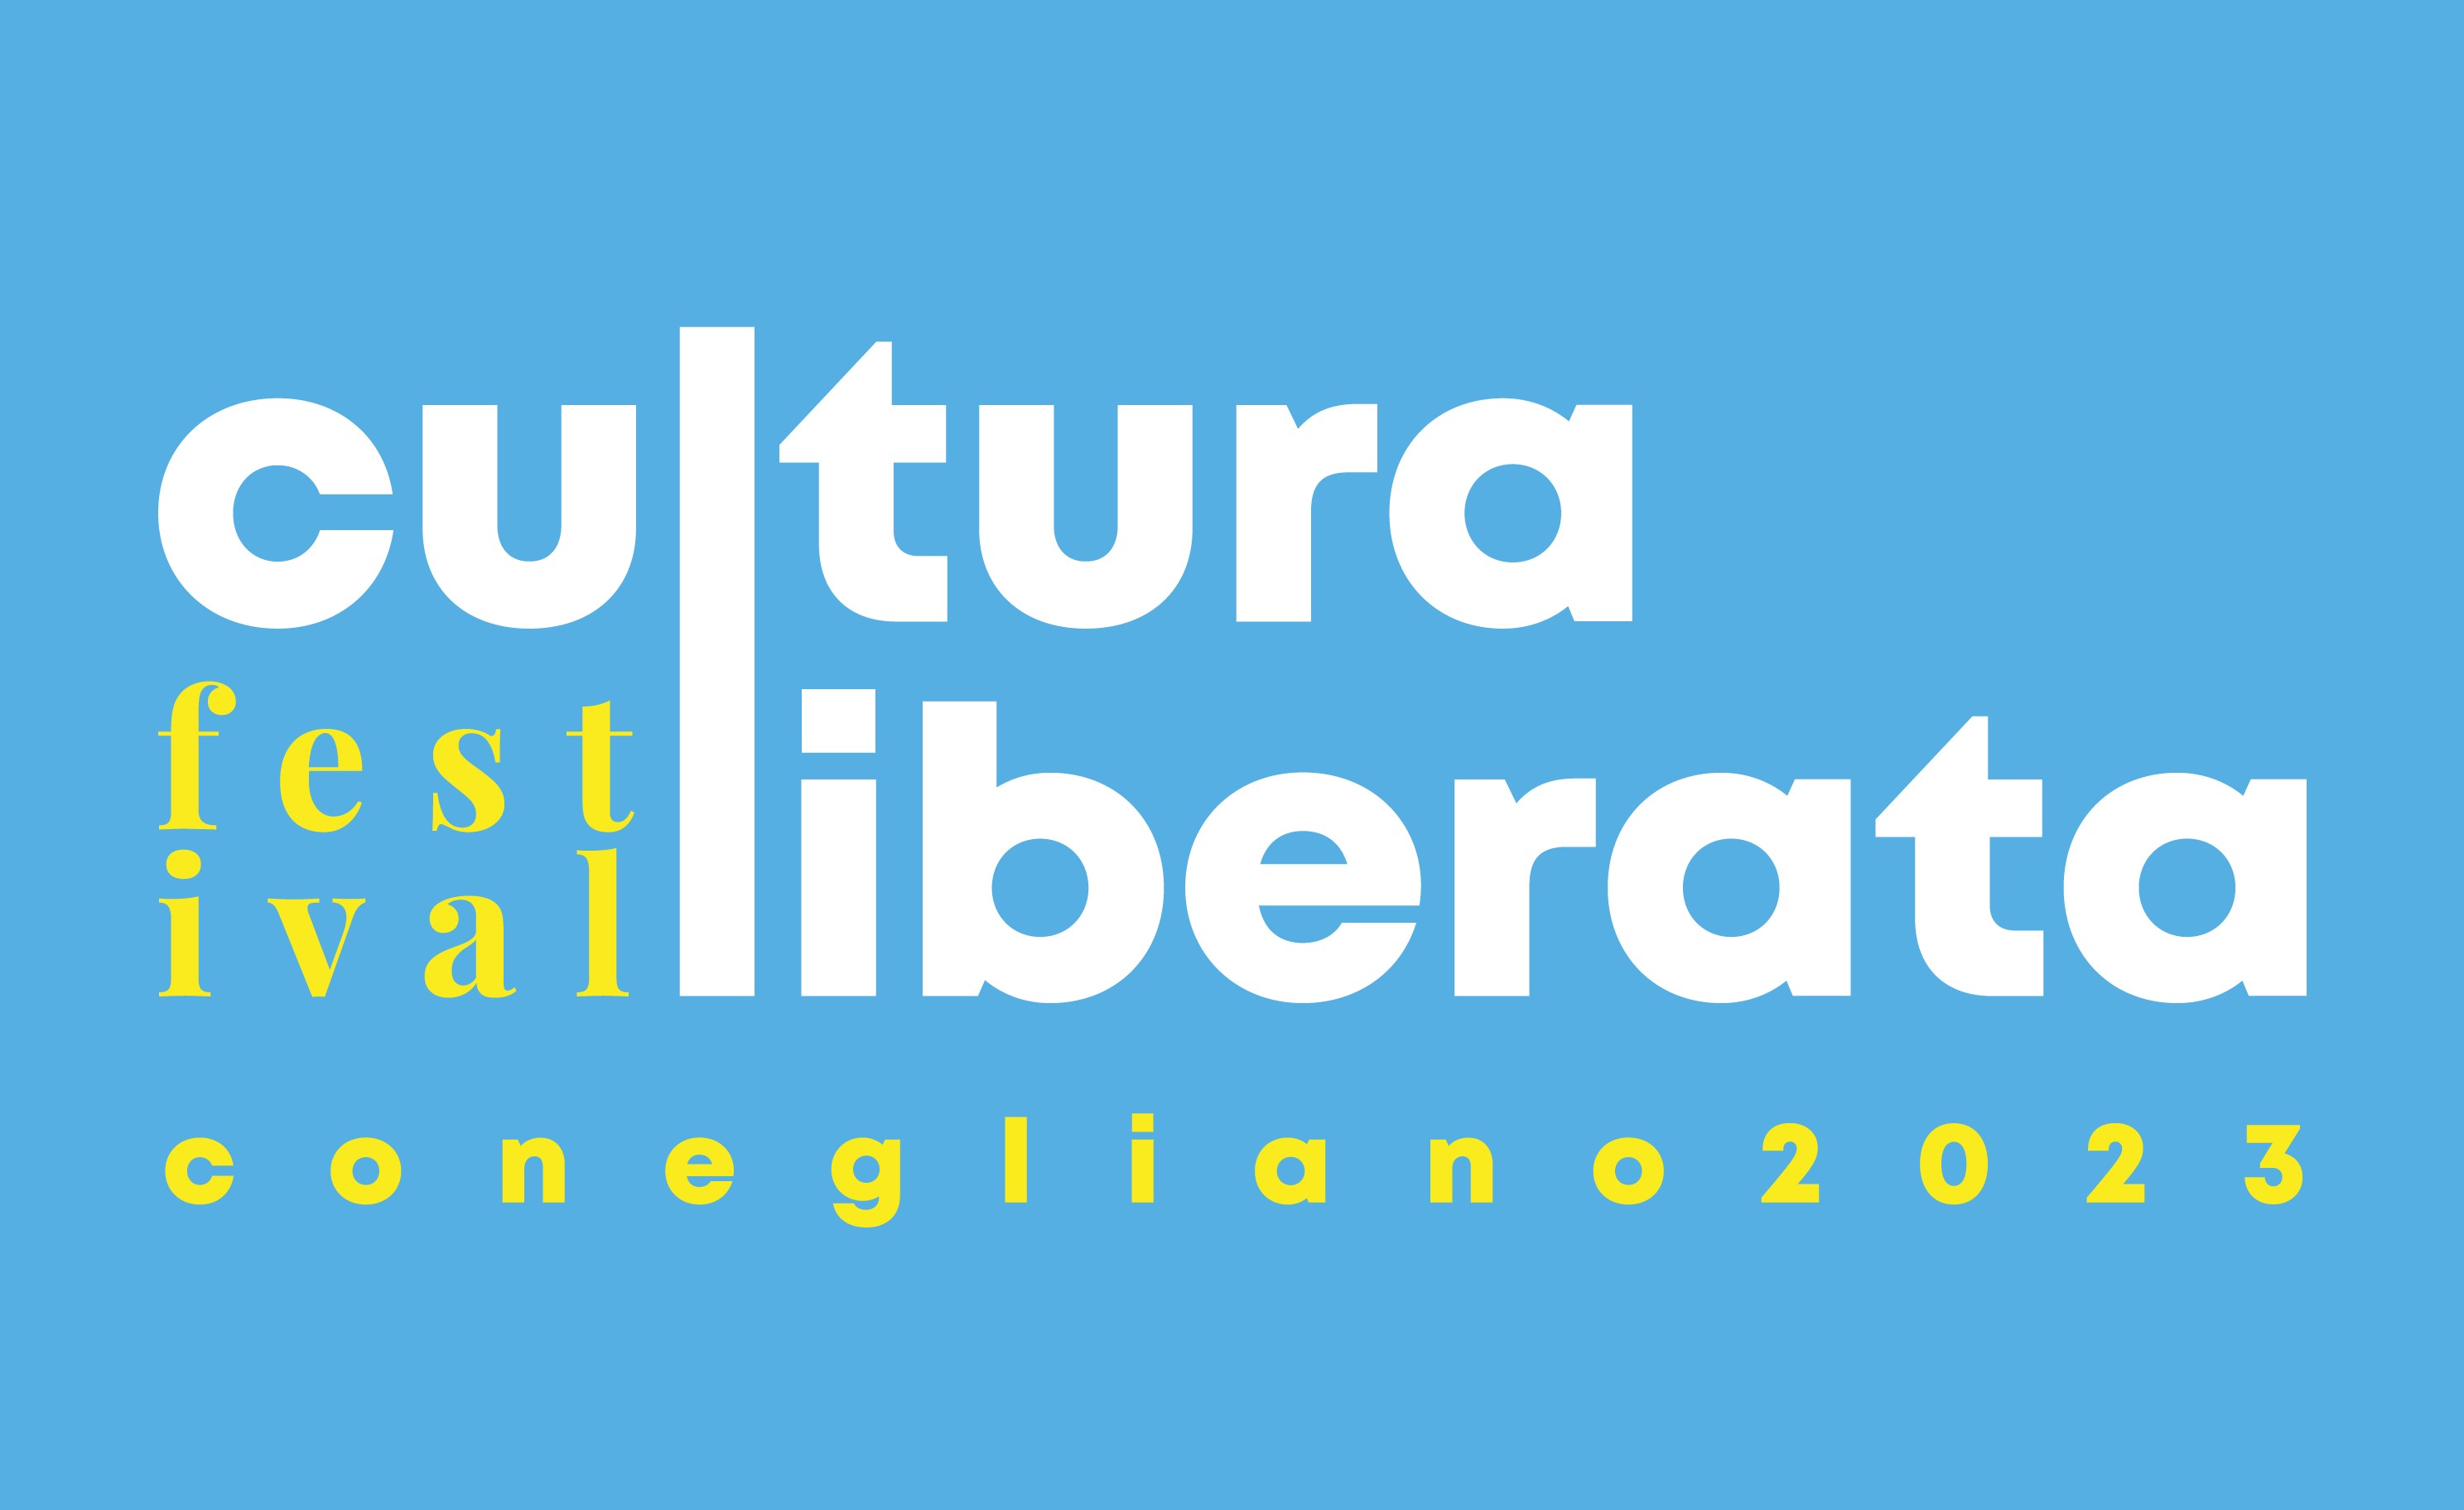 Festival Cultura Liberata